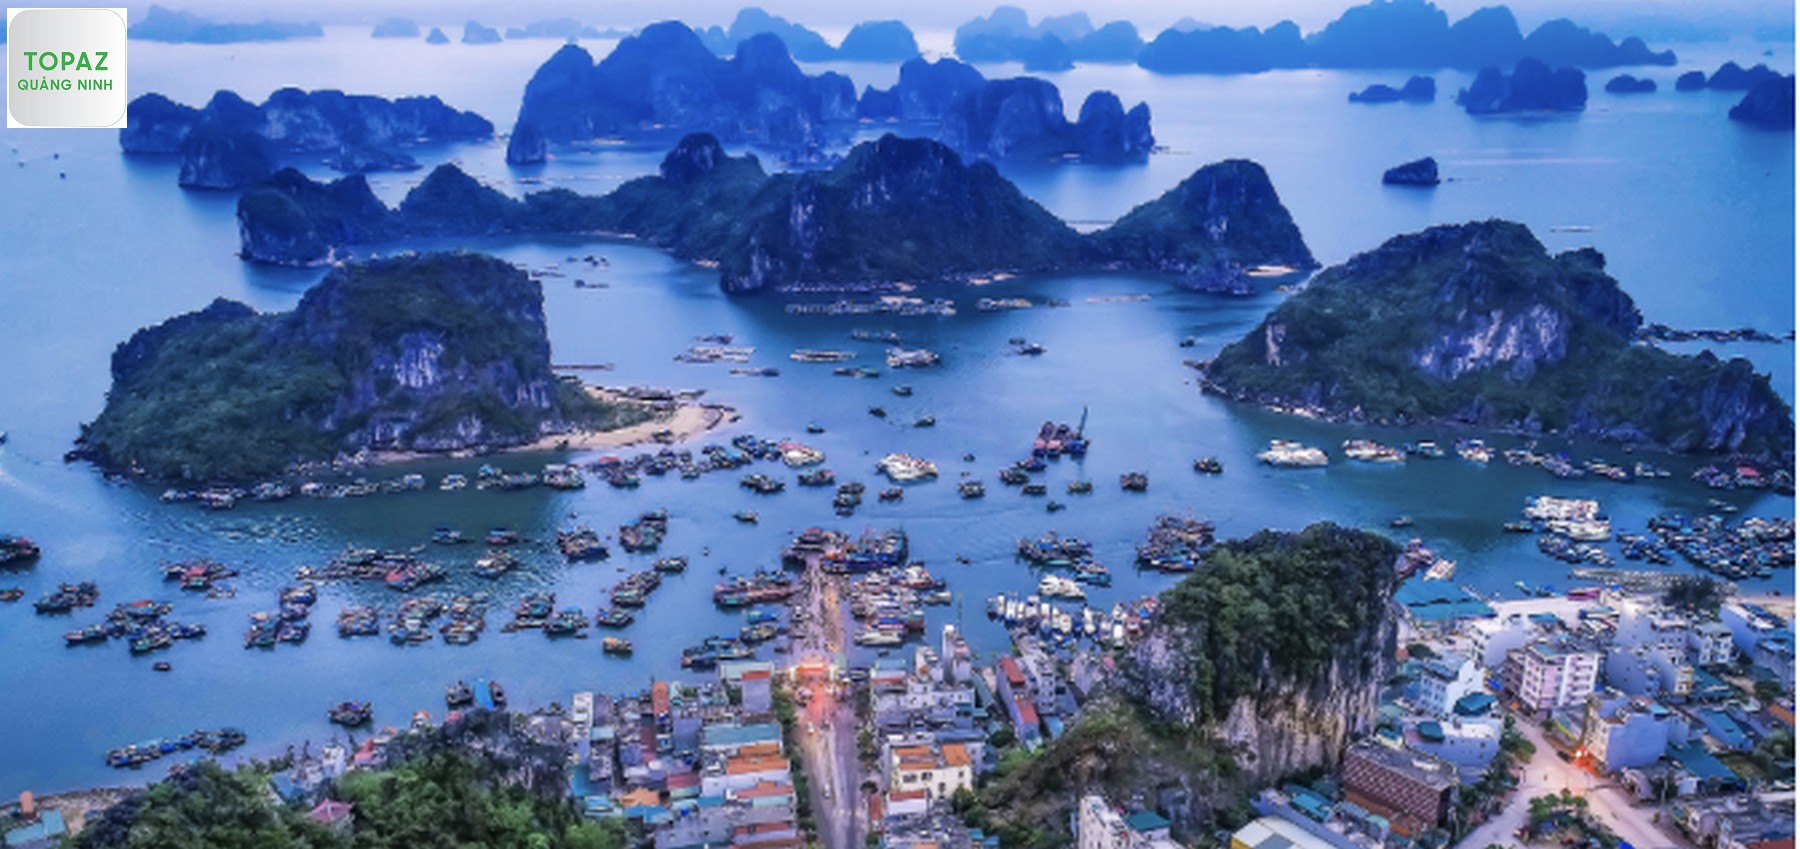 Hình ảnh vịnh Hạ Long nổi tiếng 